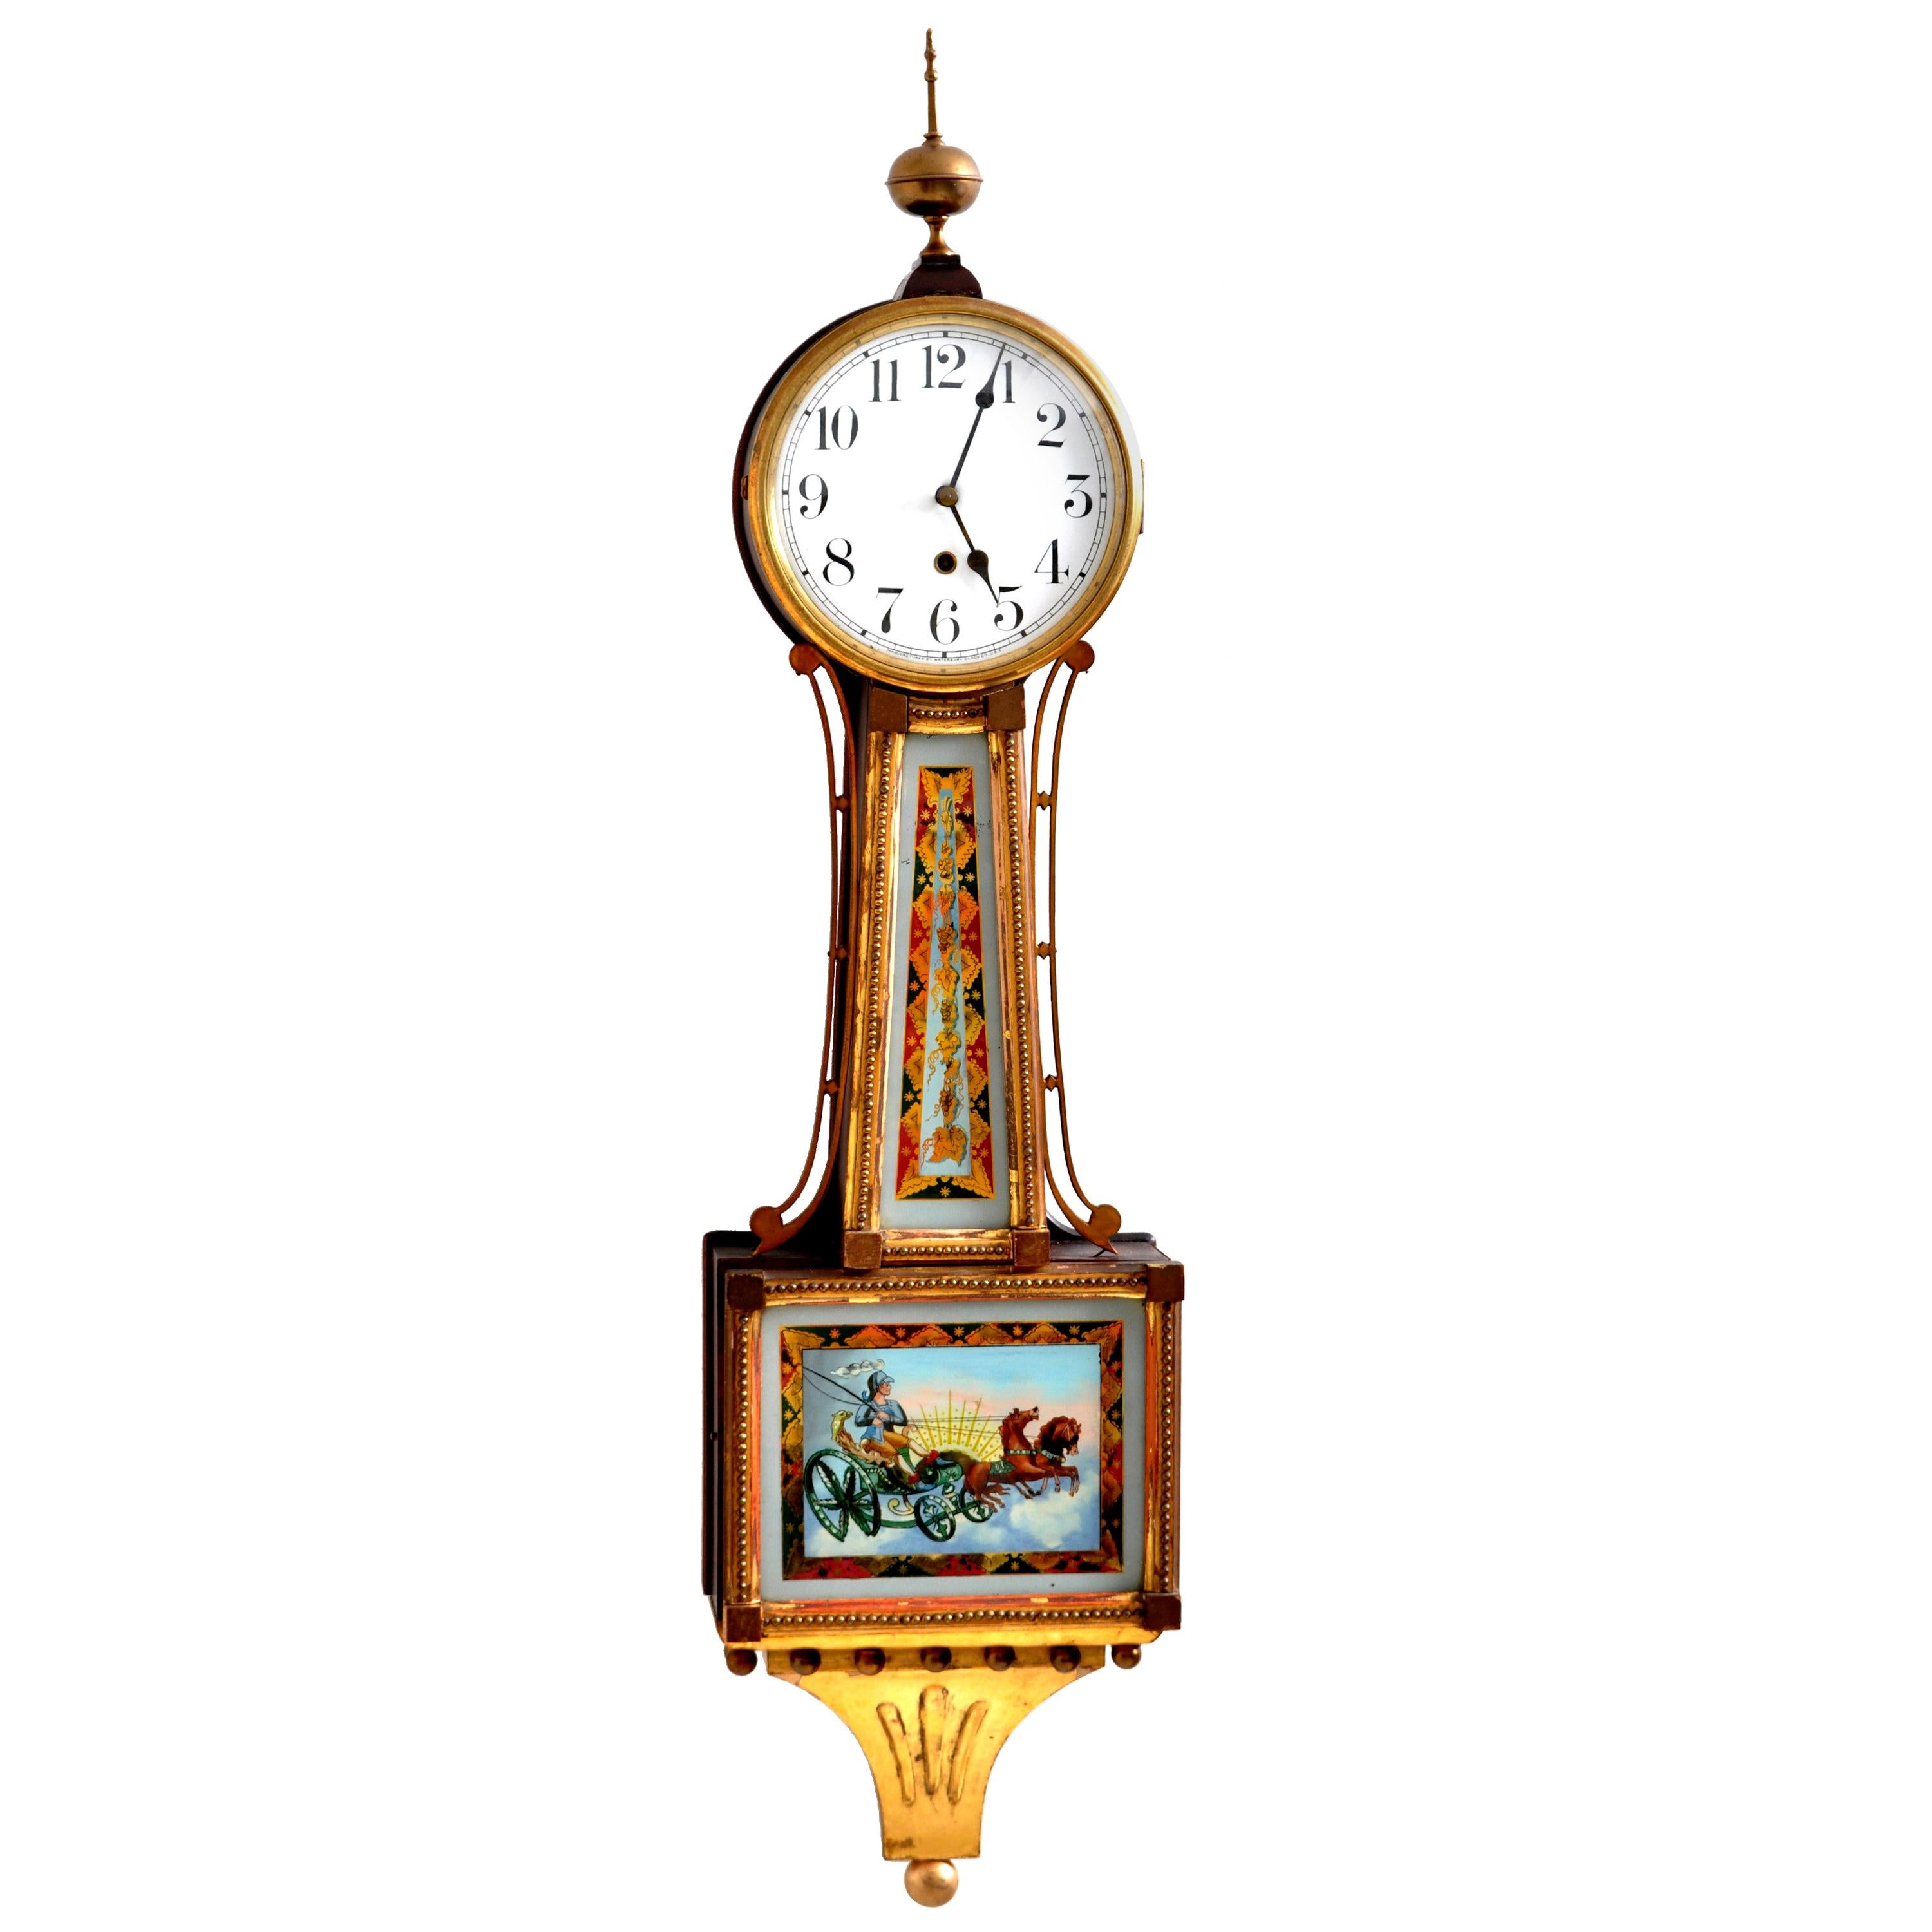 Antique American Waterbury Willard 8 day Églomisé "Aurora" #3 Banjo Clock, 1908